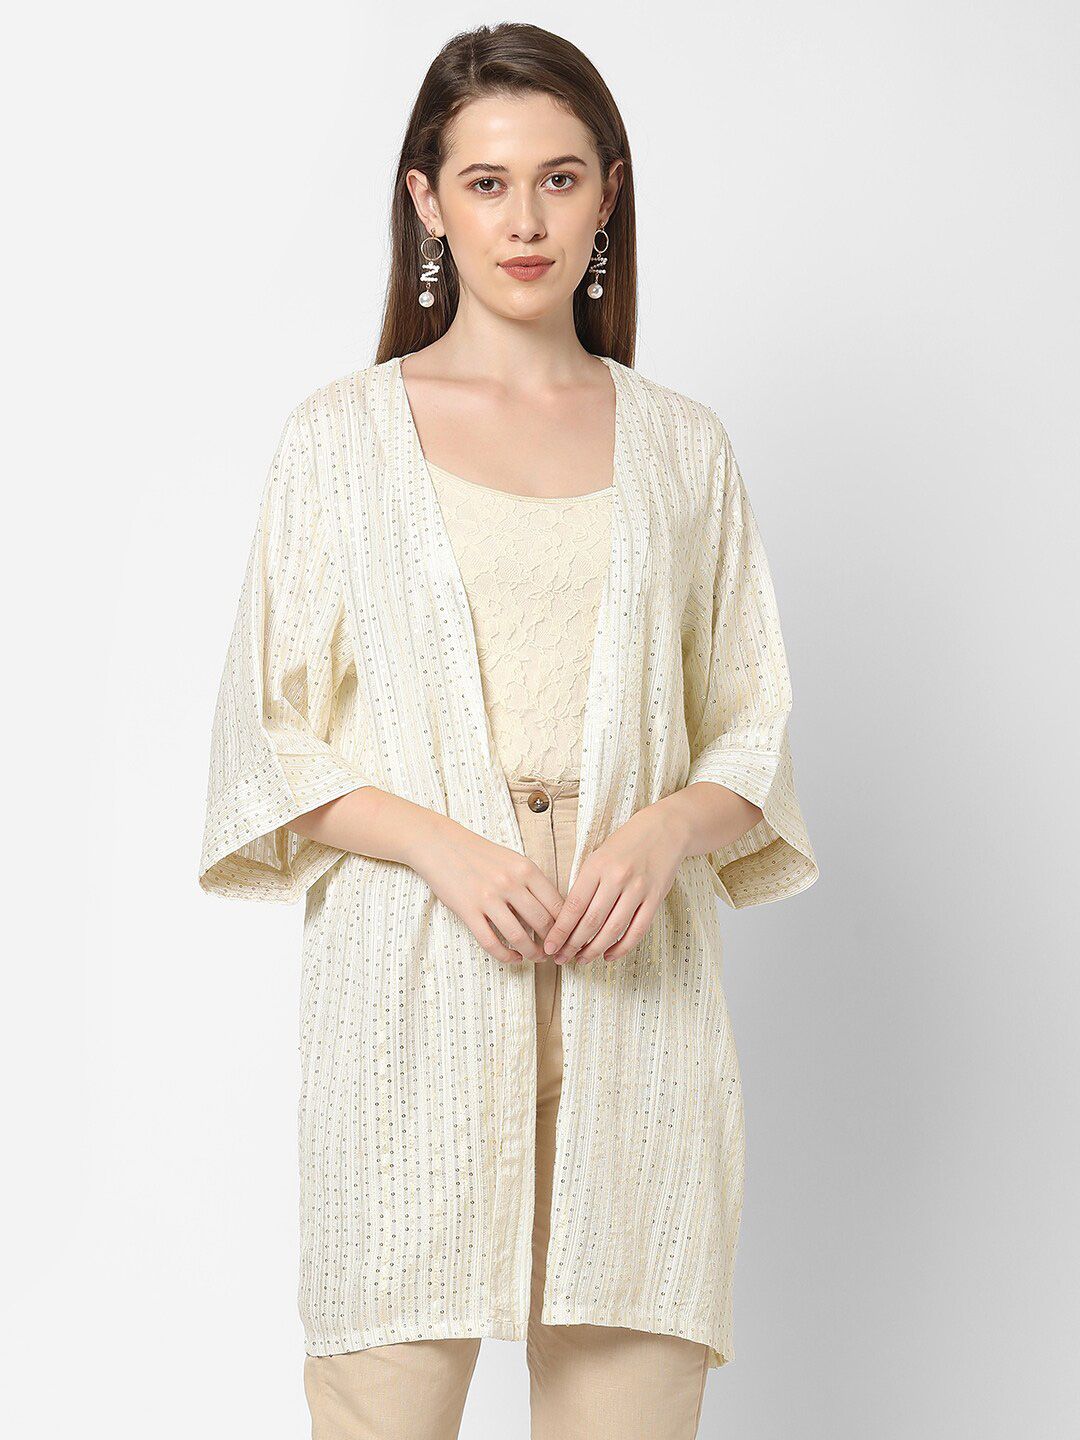 Cloth Haus India Women Off White Self Design Kimono Shrug Price in India